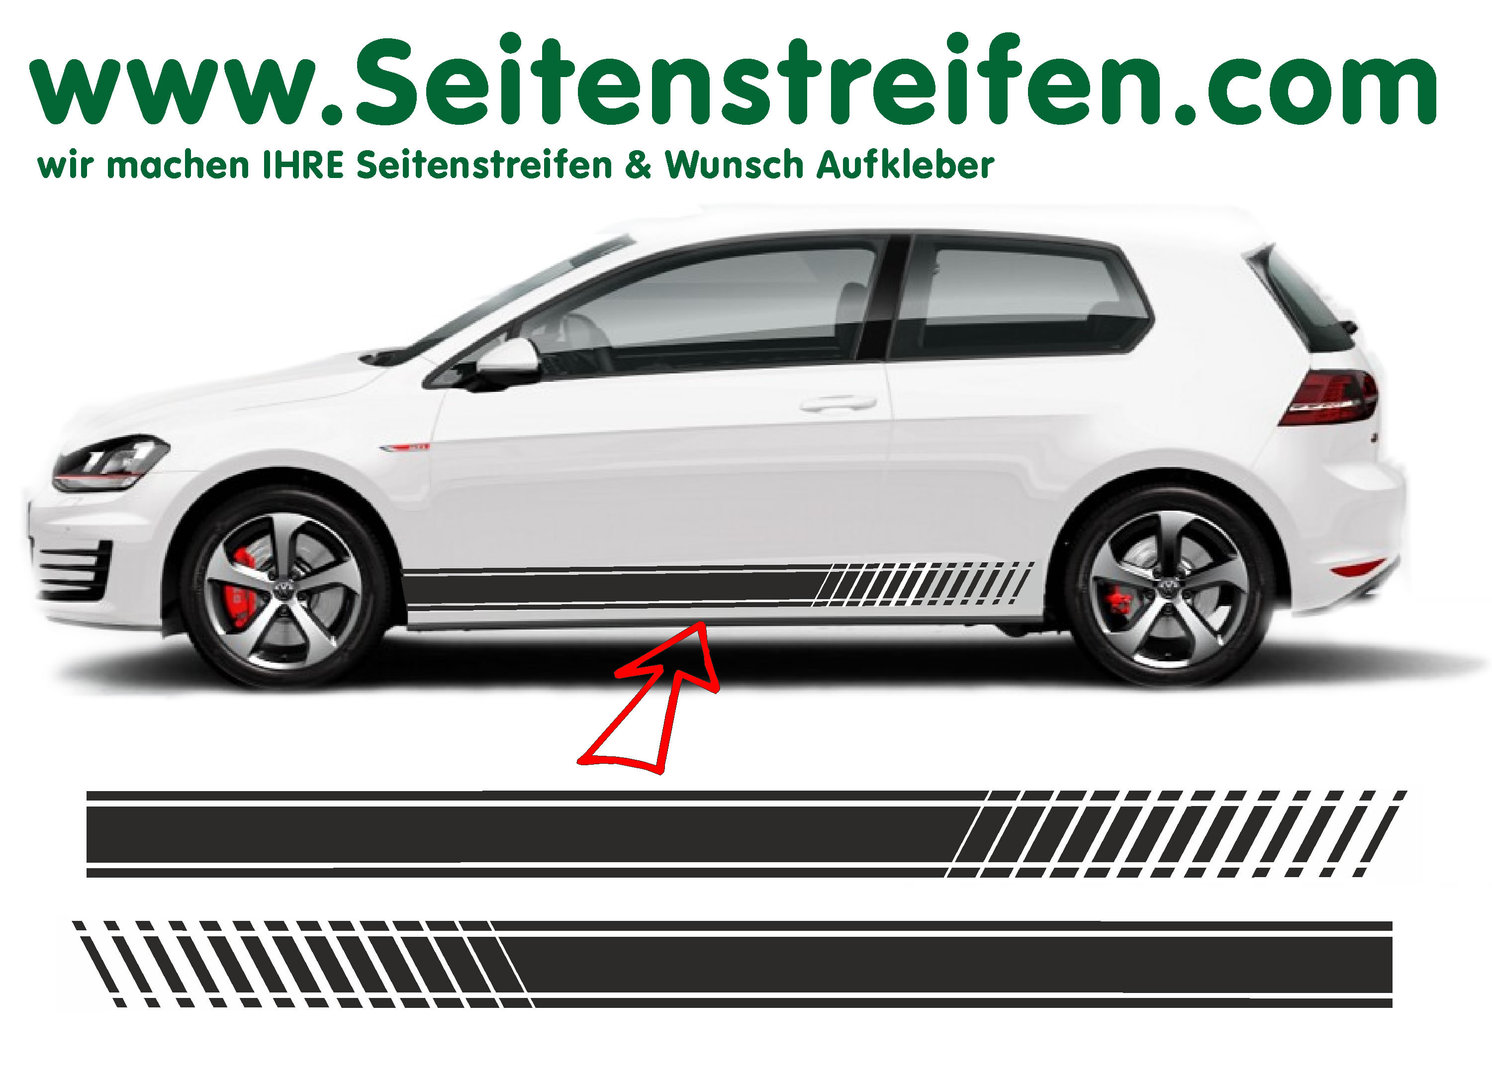 VW Golf EVO adesivi strisce laterali adesive auto sticker - per 3-4 porte - 8501